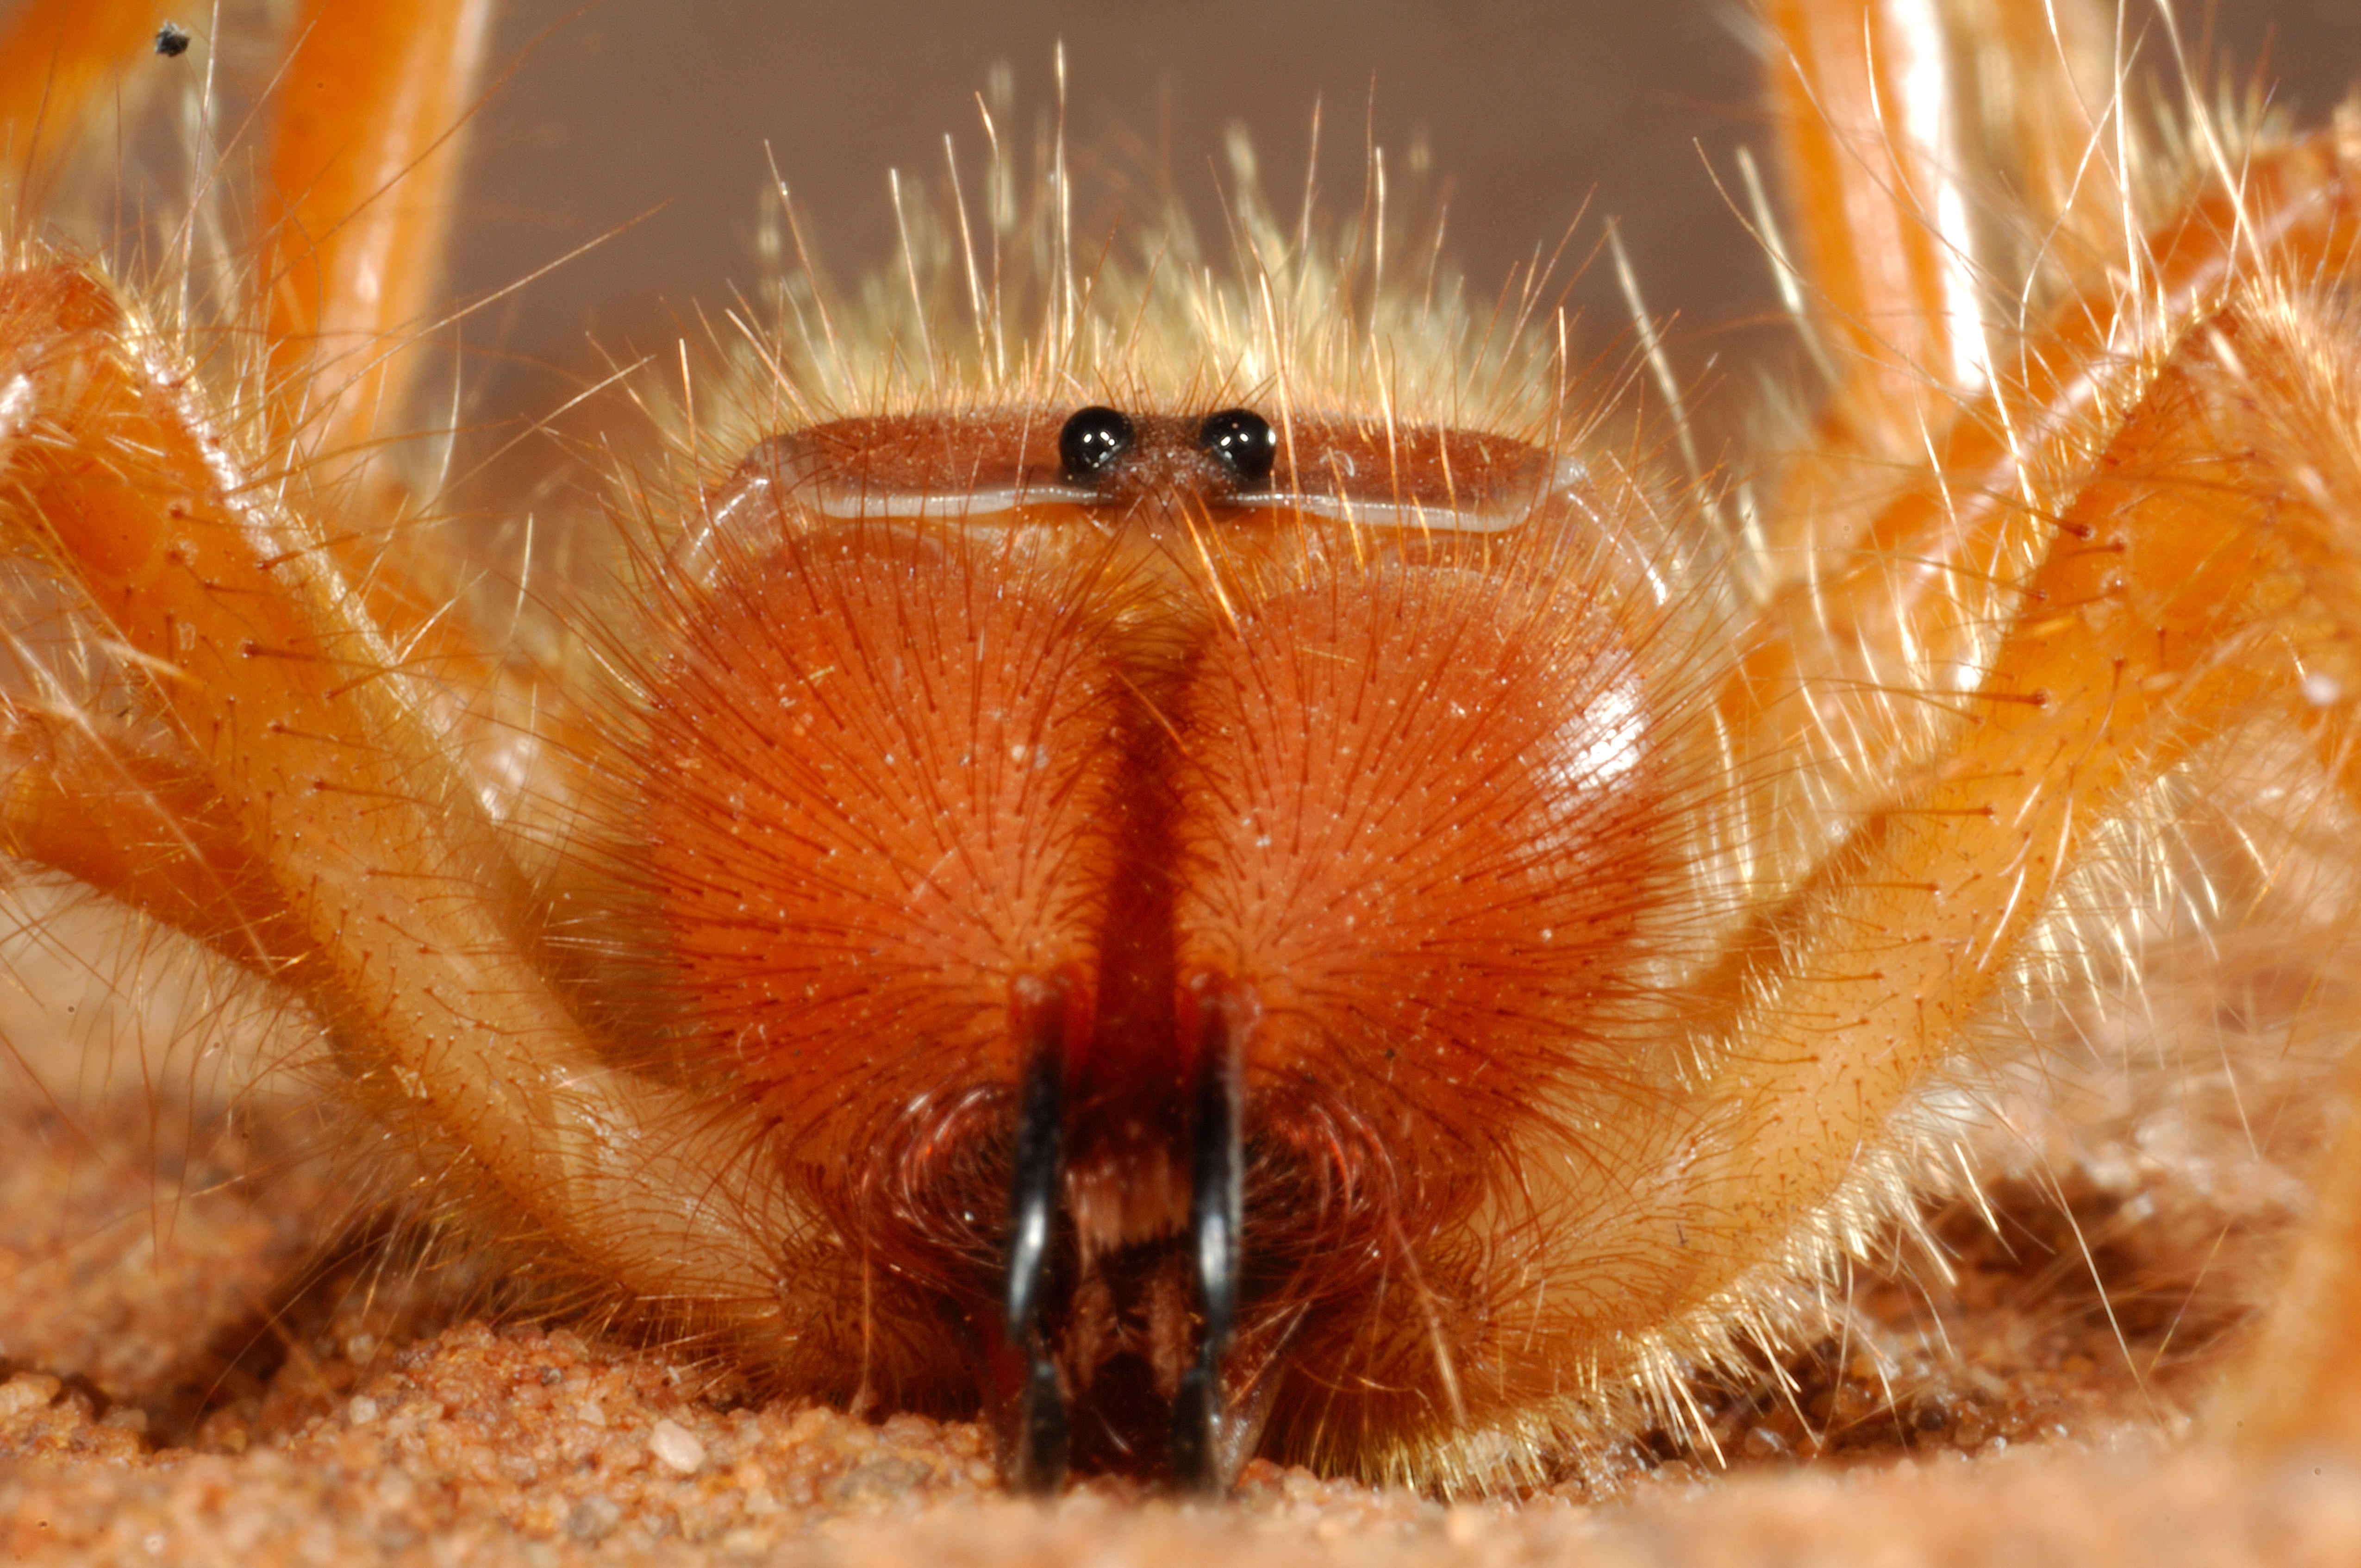 Фаланга насекомое фото и описание